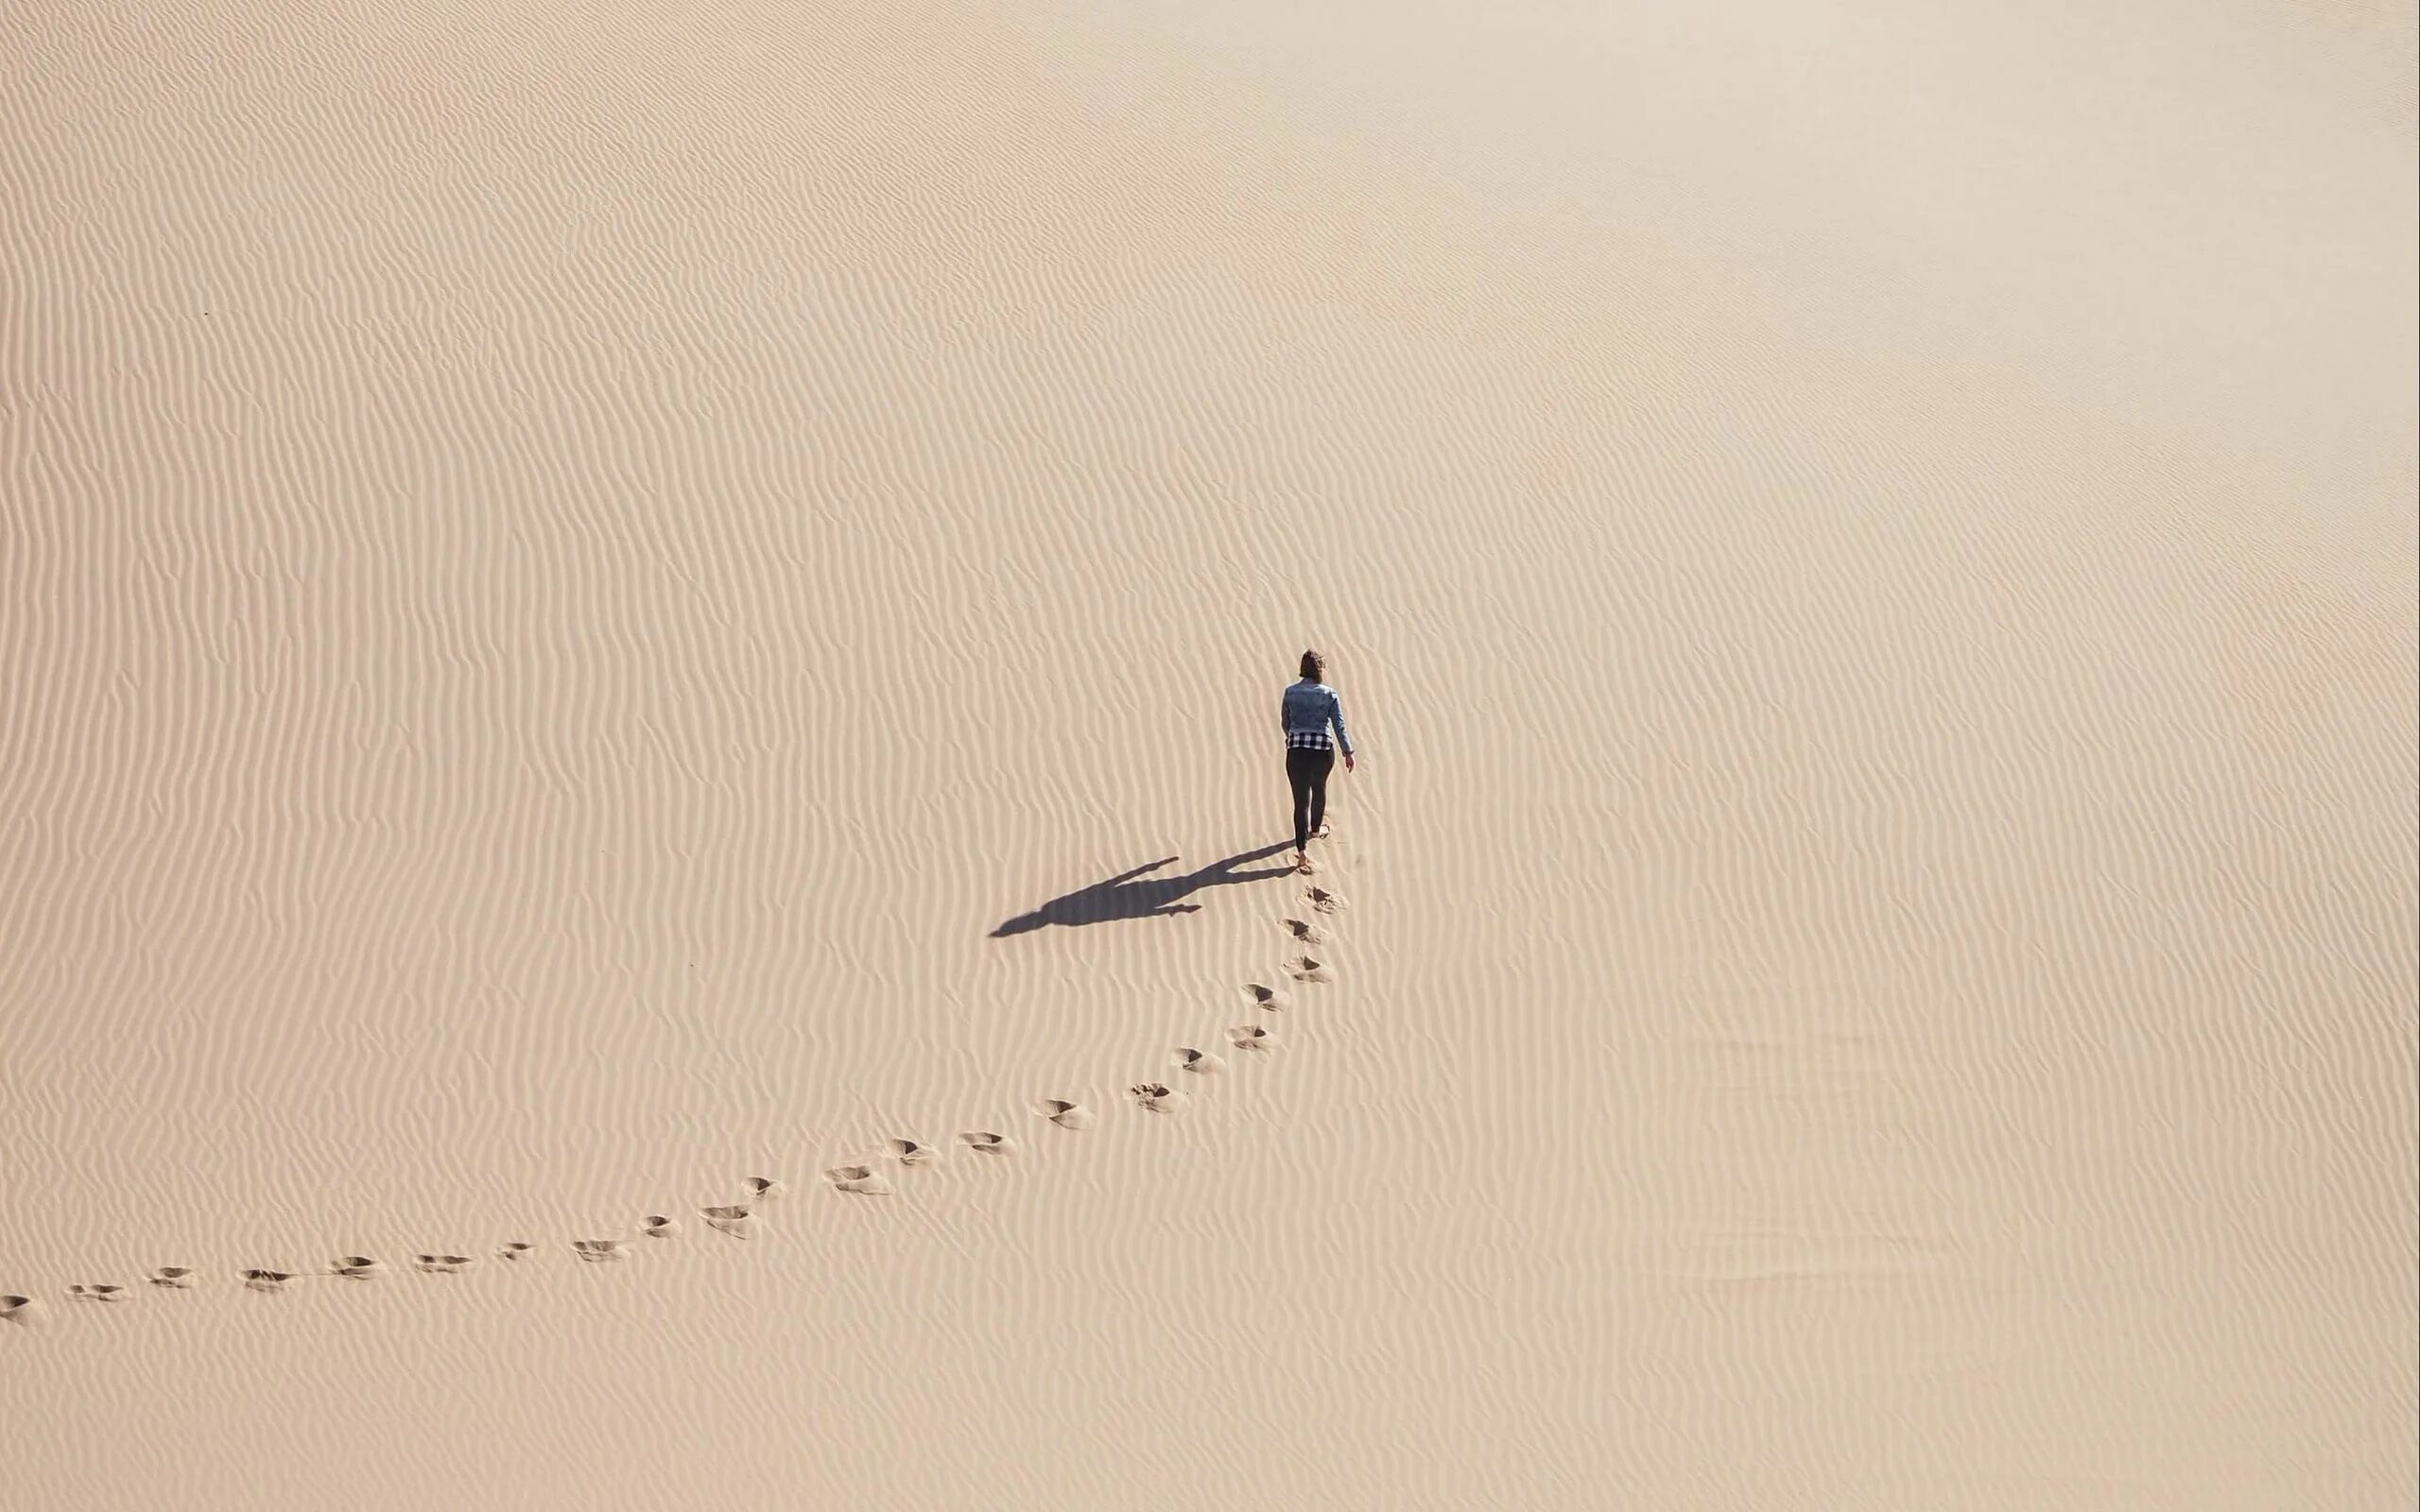 Следы на песке в пустыне. Следы в пустыне. Идущие по пустыне. Человек идет по пустыне.